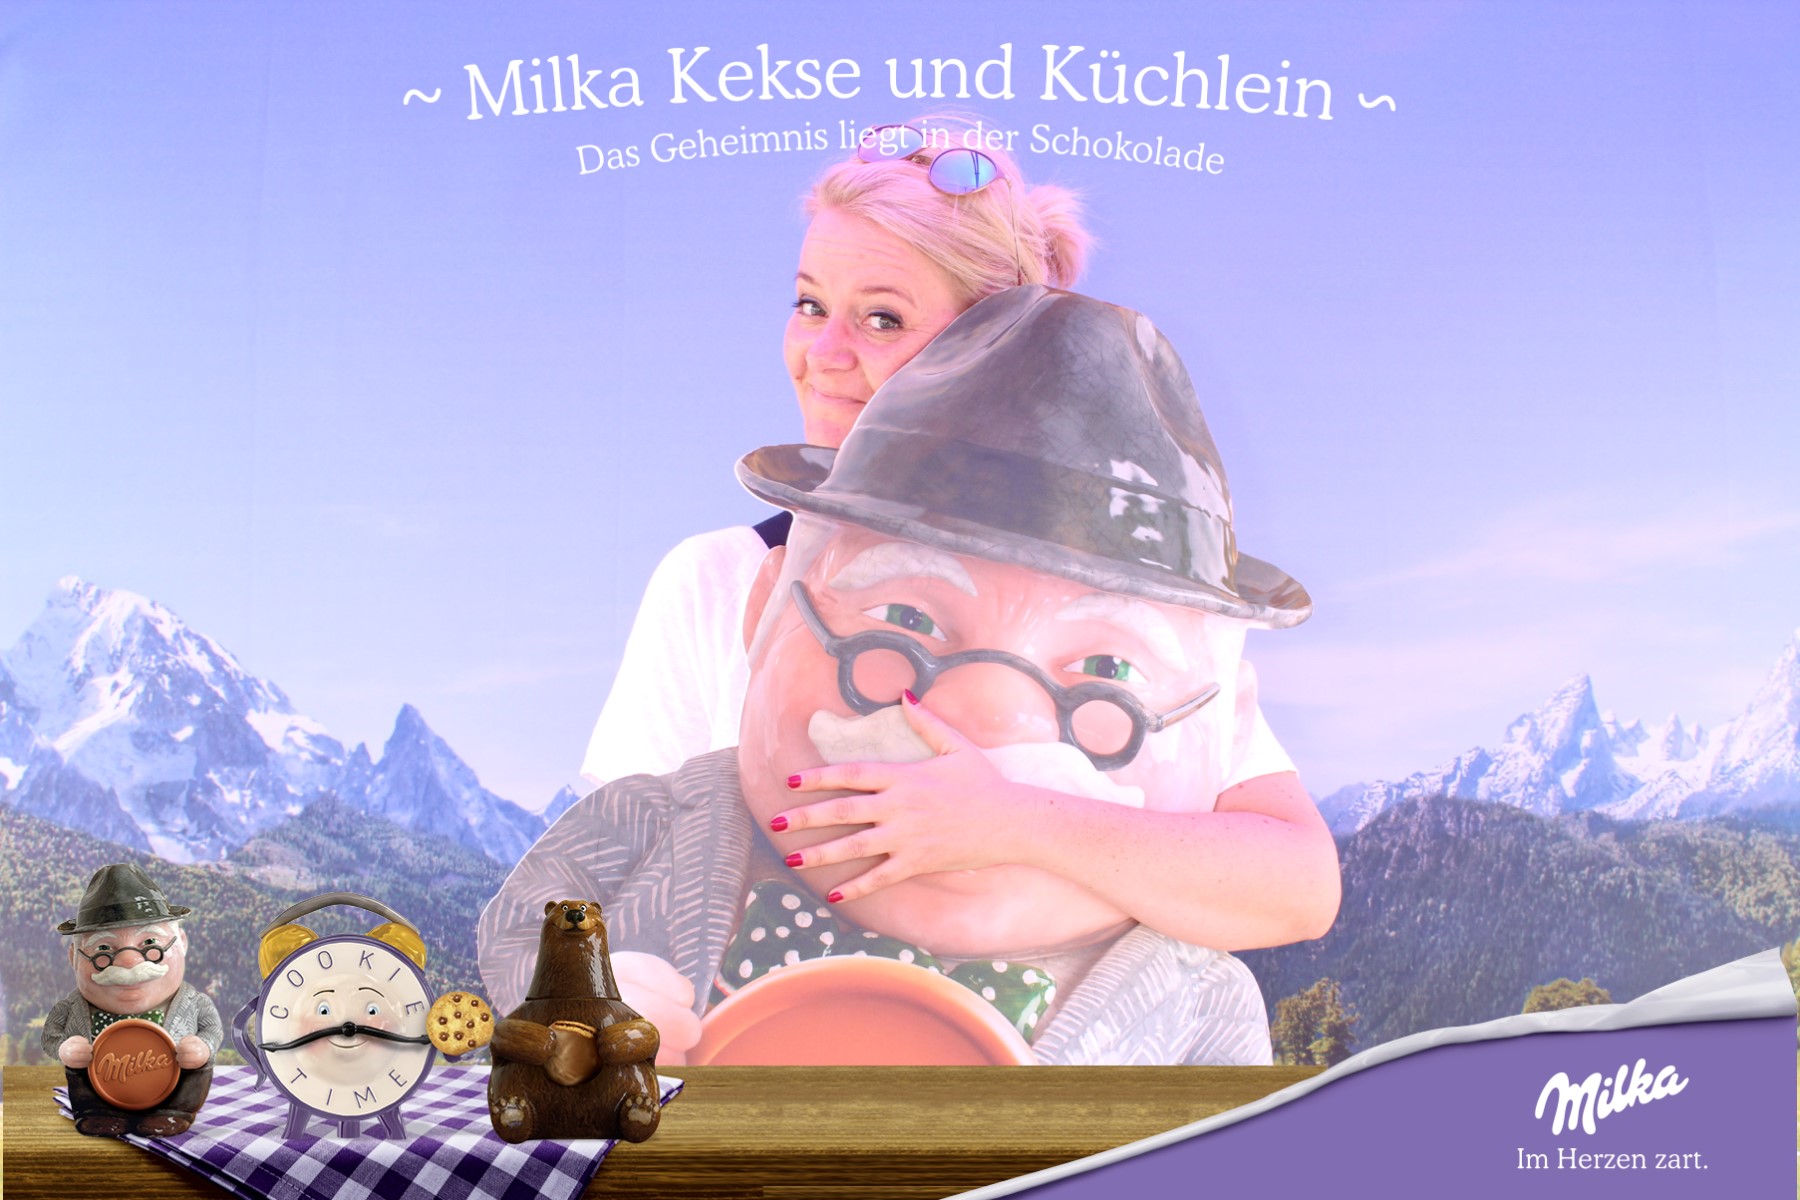 Milka Keksdosen Tour: Impressionen aus Leipzig und ein Gewinnspiel!